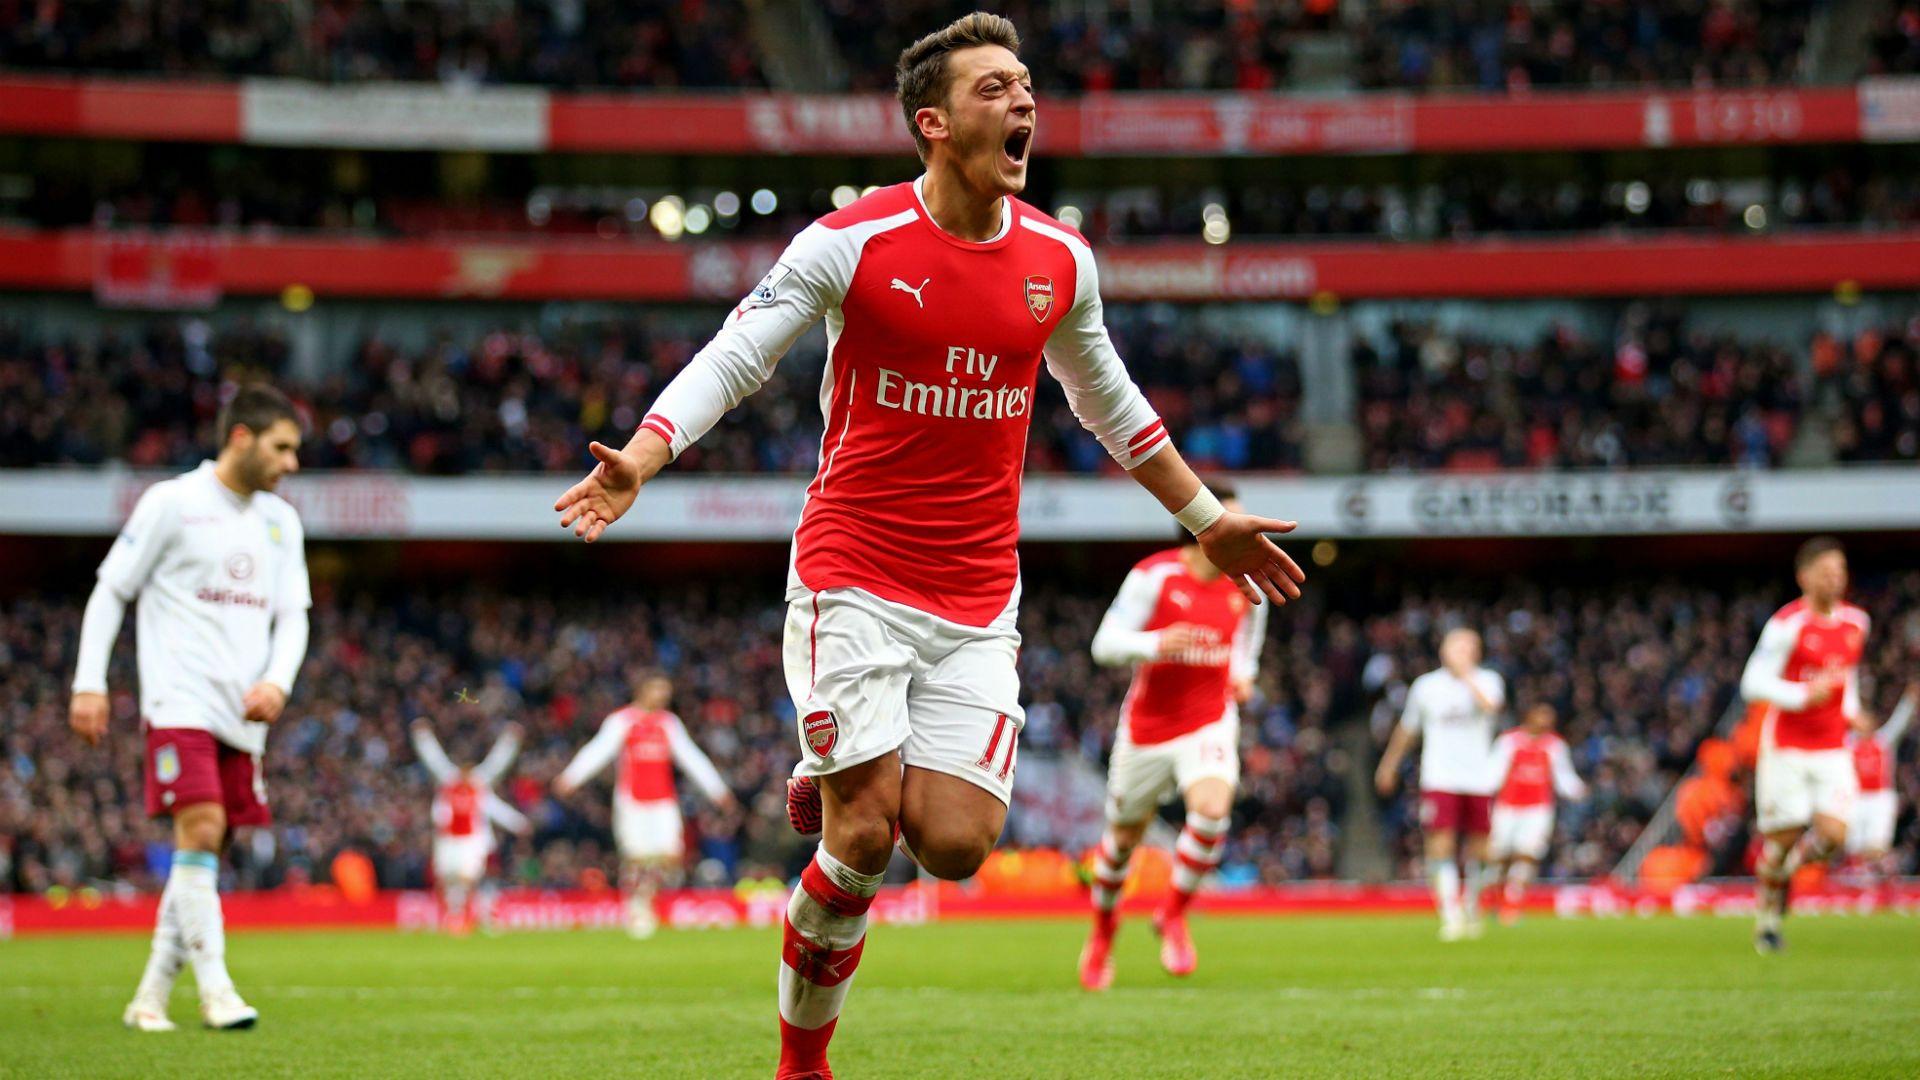 Discussion: Mesut Ozil's future at Arsenal